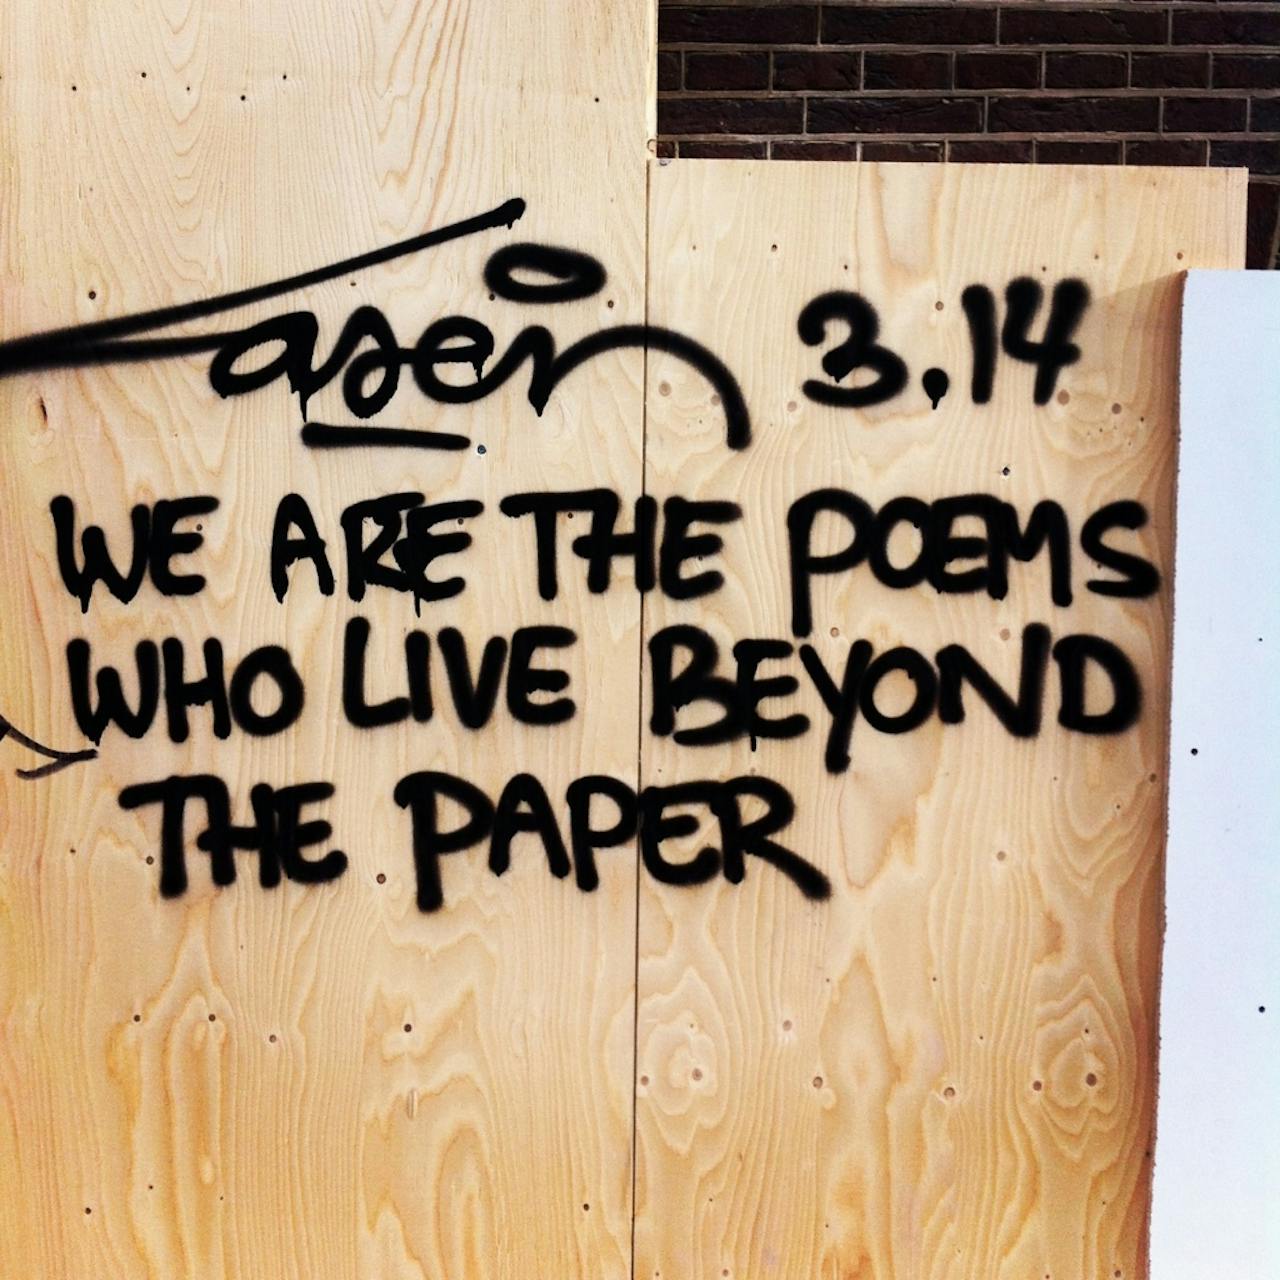 Wij zijn de gedichten die buiten het papier leven. Graffiti van Laser 3.14.